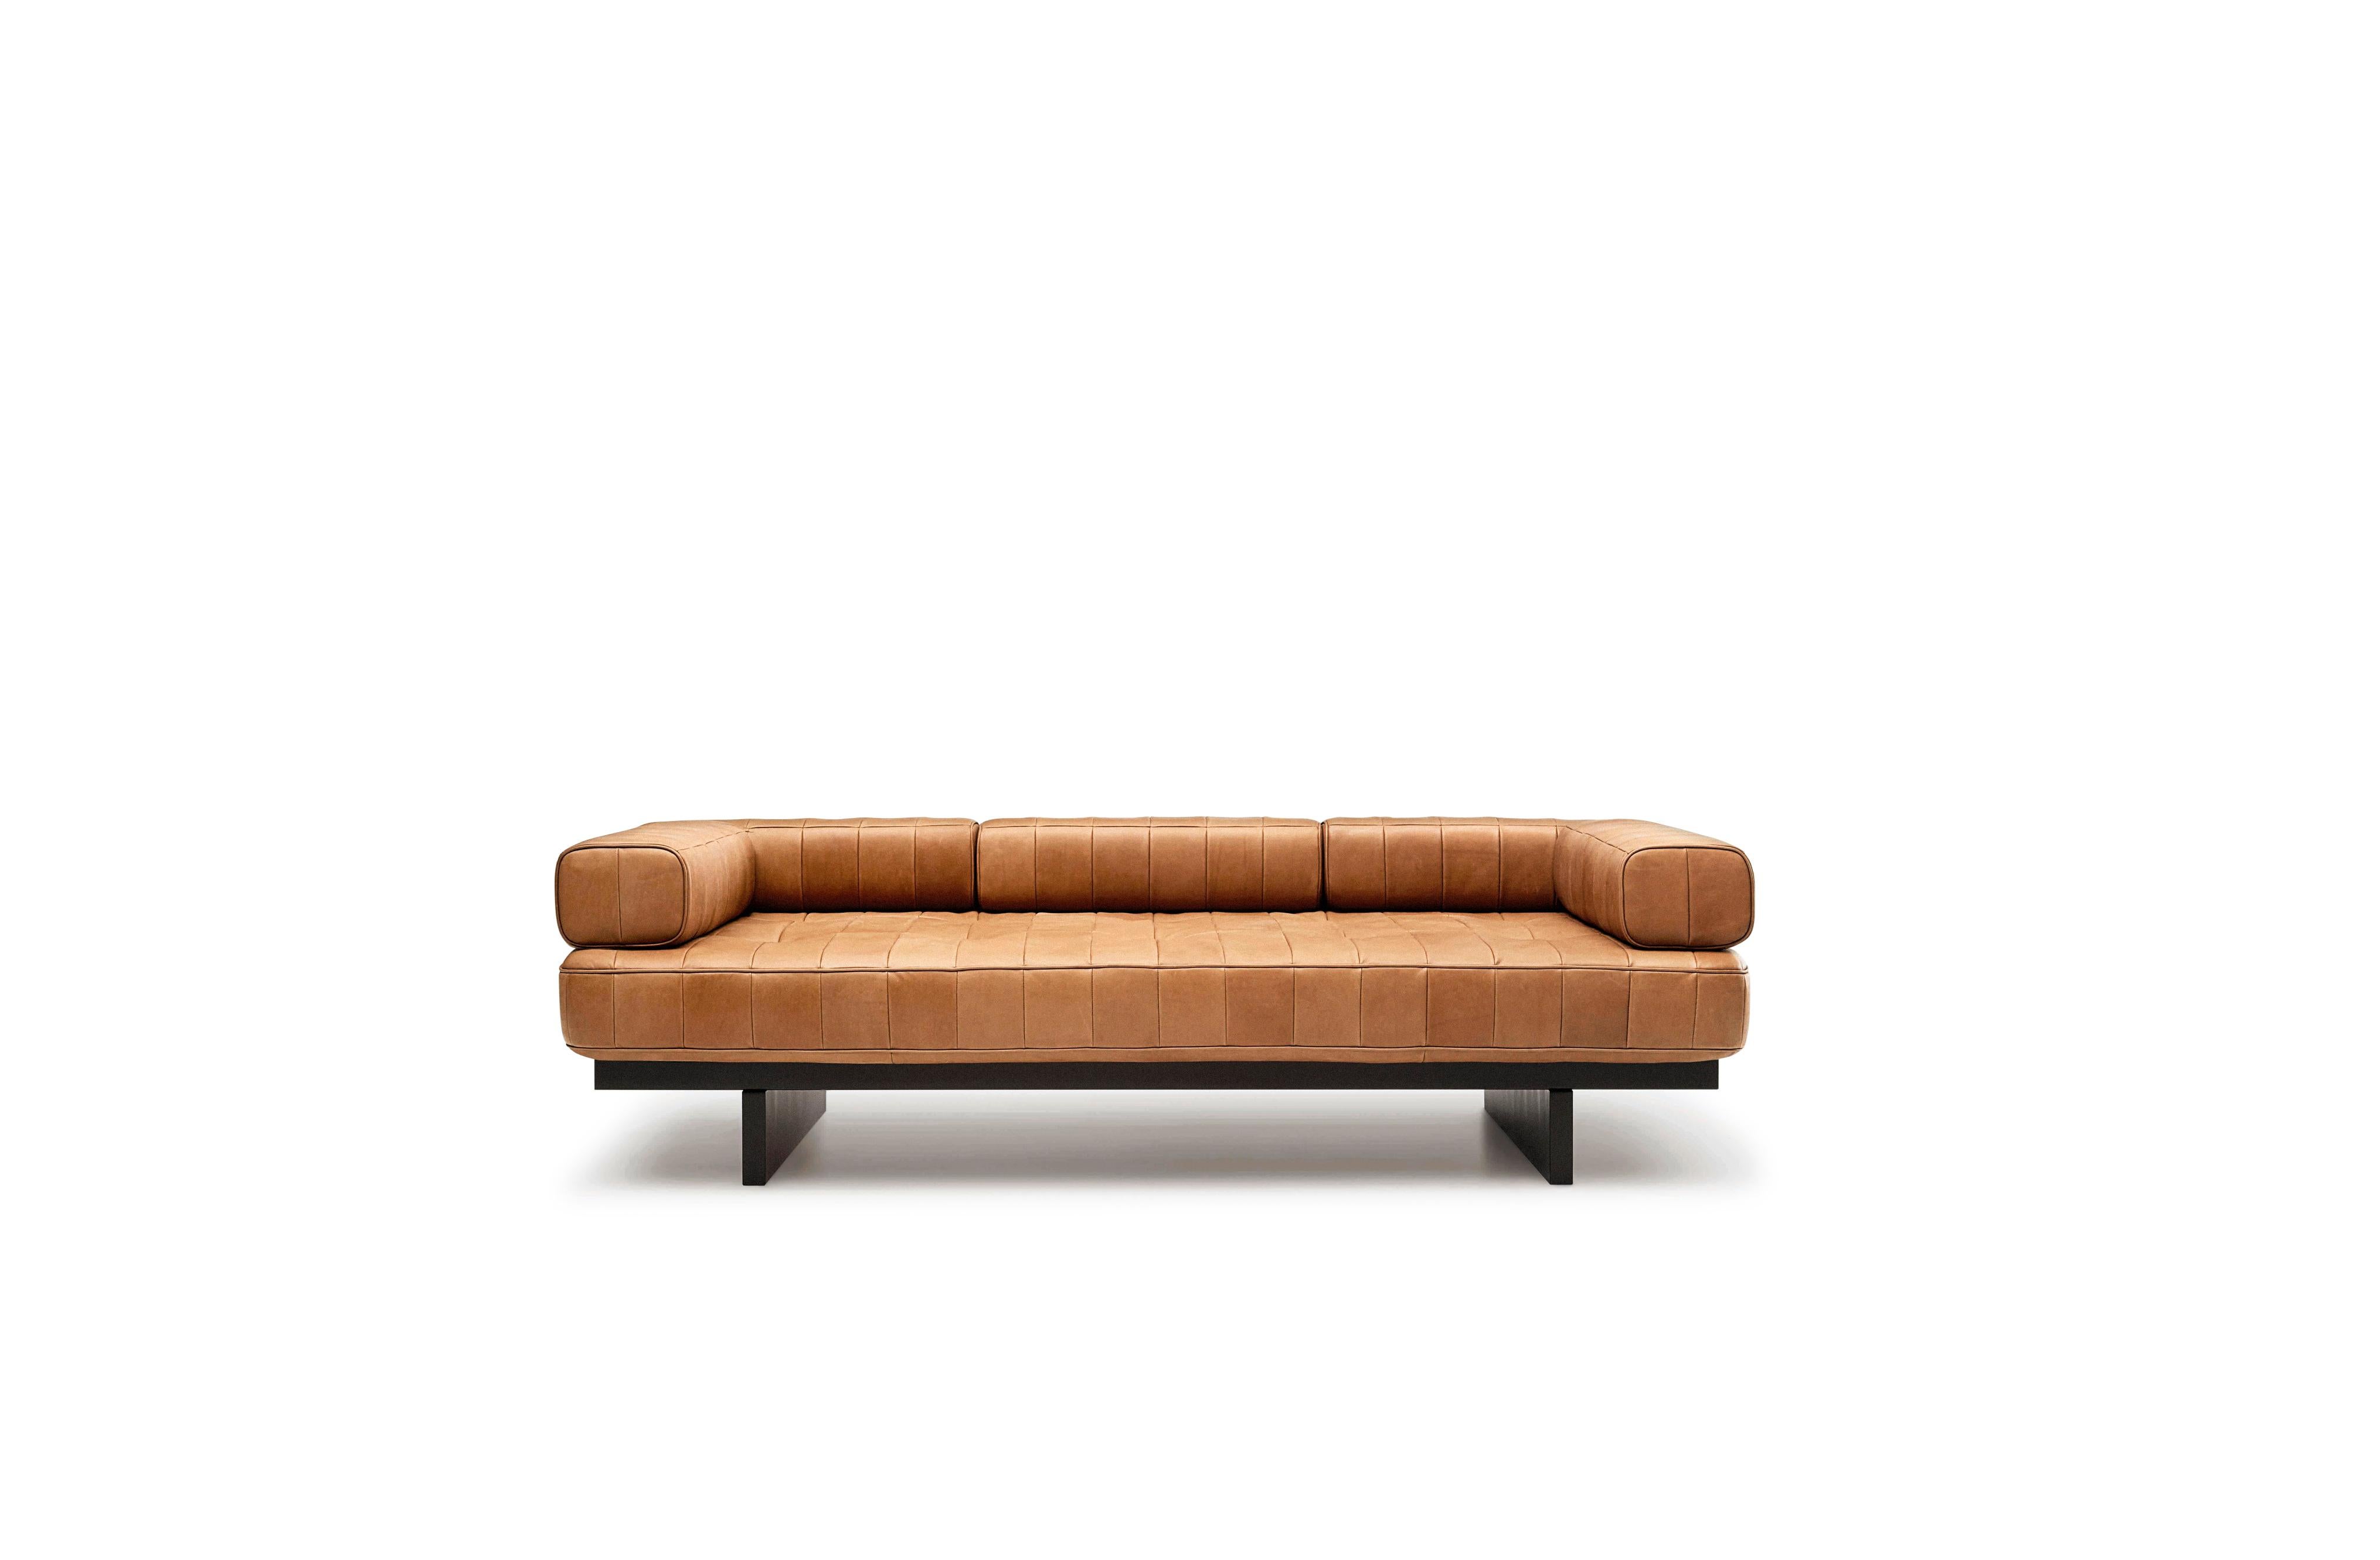 DS-80 lounge sofa von De Sede
Abmessungen: T 69 x B 204 x H 58 cm
MATERIALIEN: Gestell aus Massivholz, seidenmatt schwarz lackiert. SEDEX-Polsterung mit SEDE-Lux-Polsterung. 
Gleiter für harte und weiche Bodenbeläge.

Die Preise können sich je